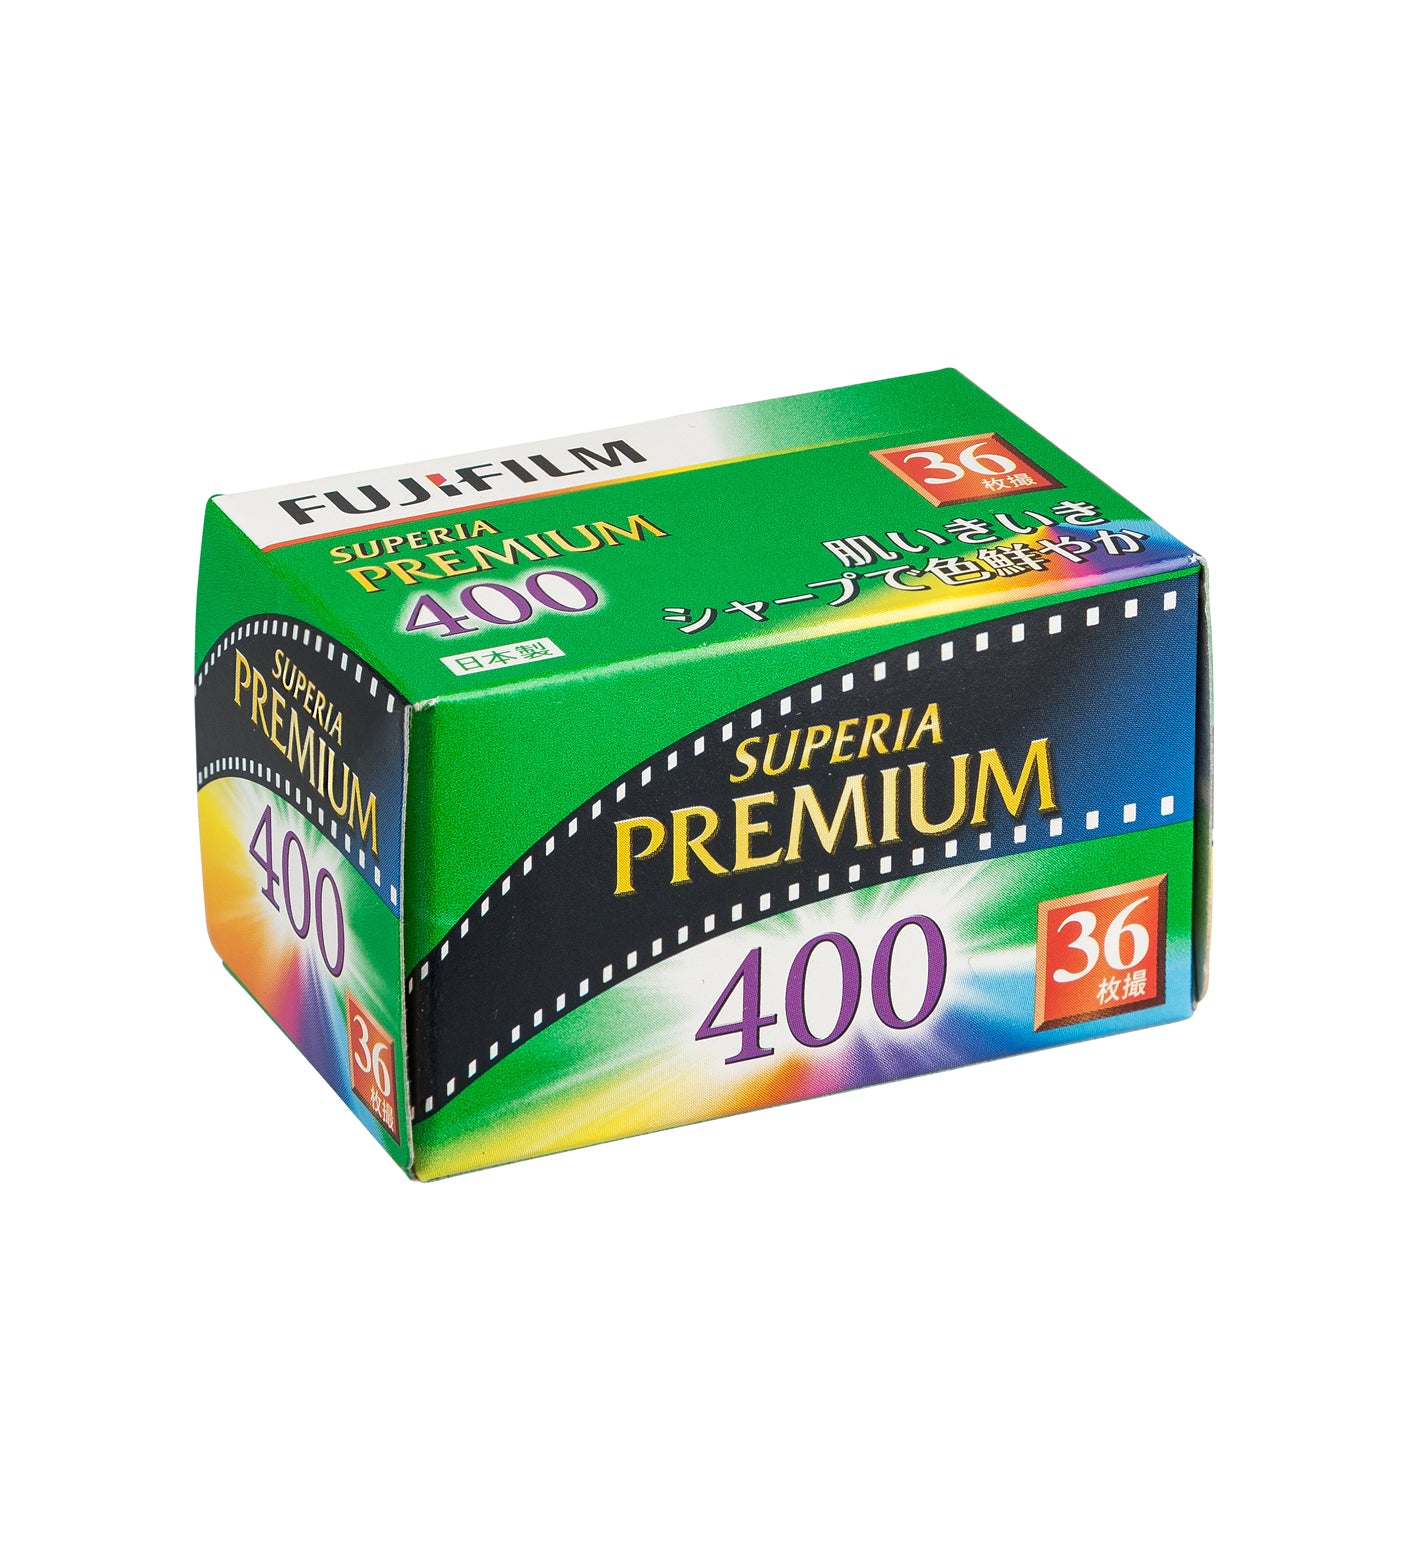 Fujifilm Superia Premium 400 35mm Film 36 Exposures (£16.50 incl